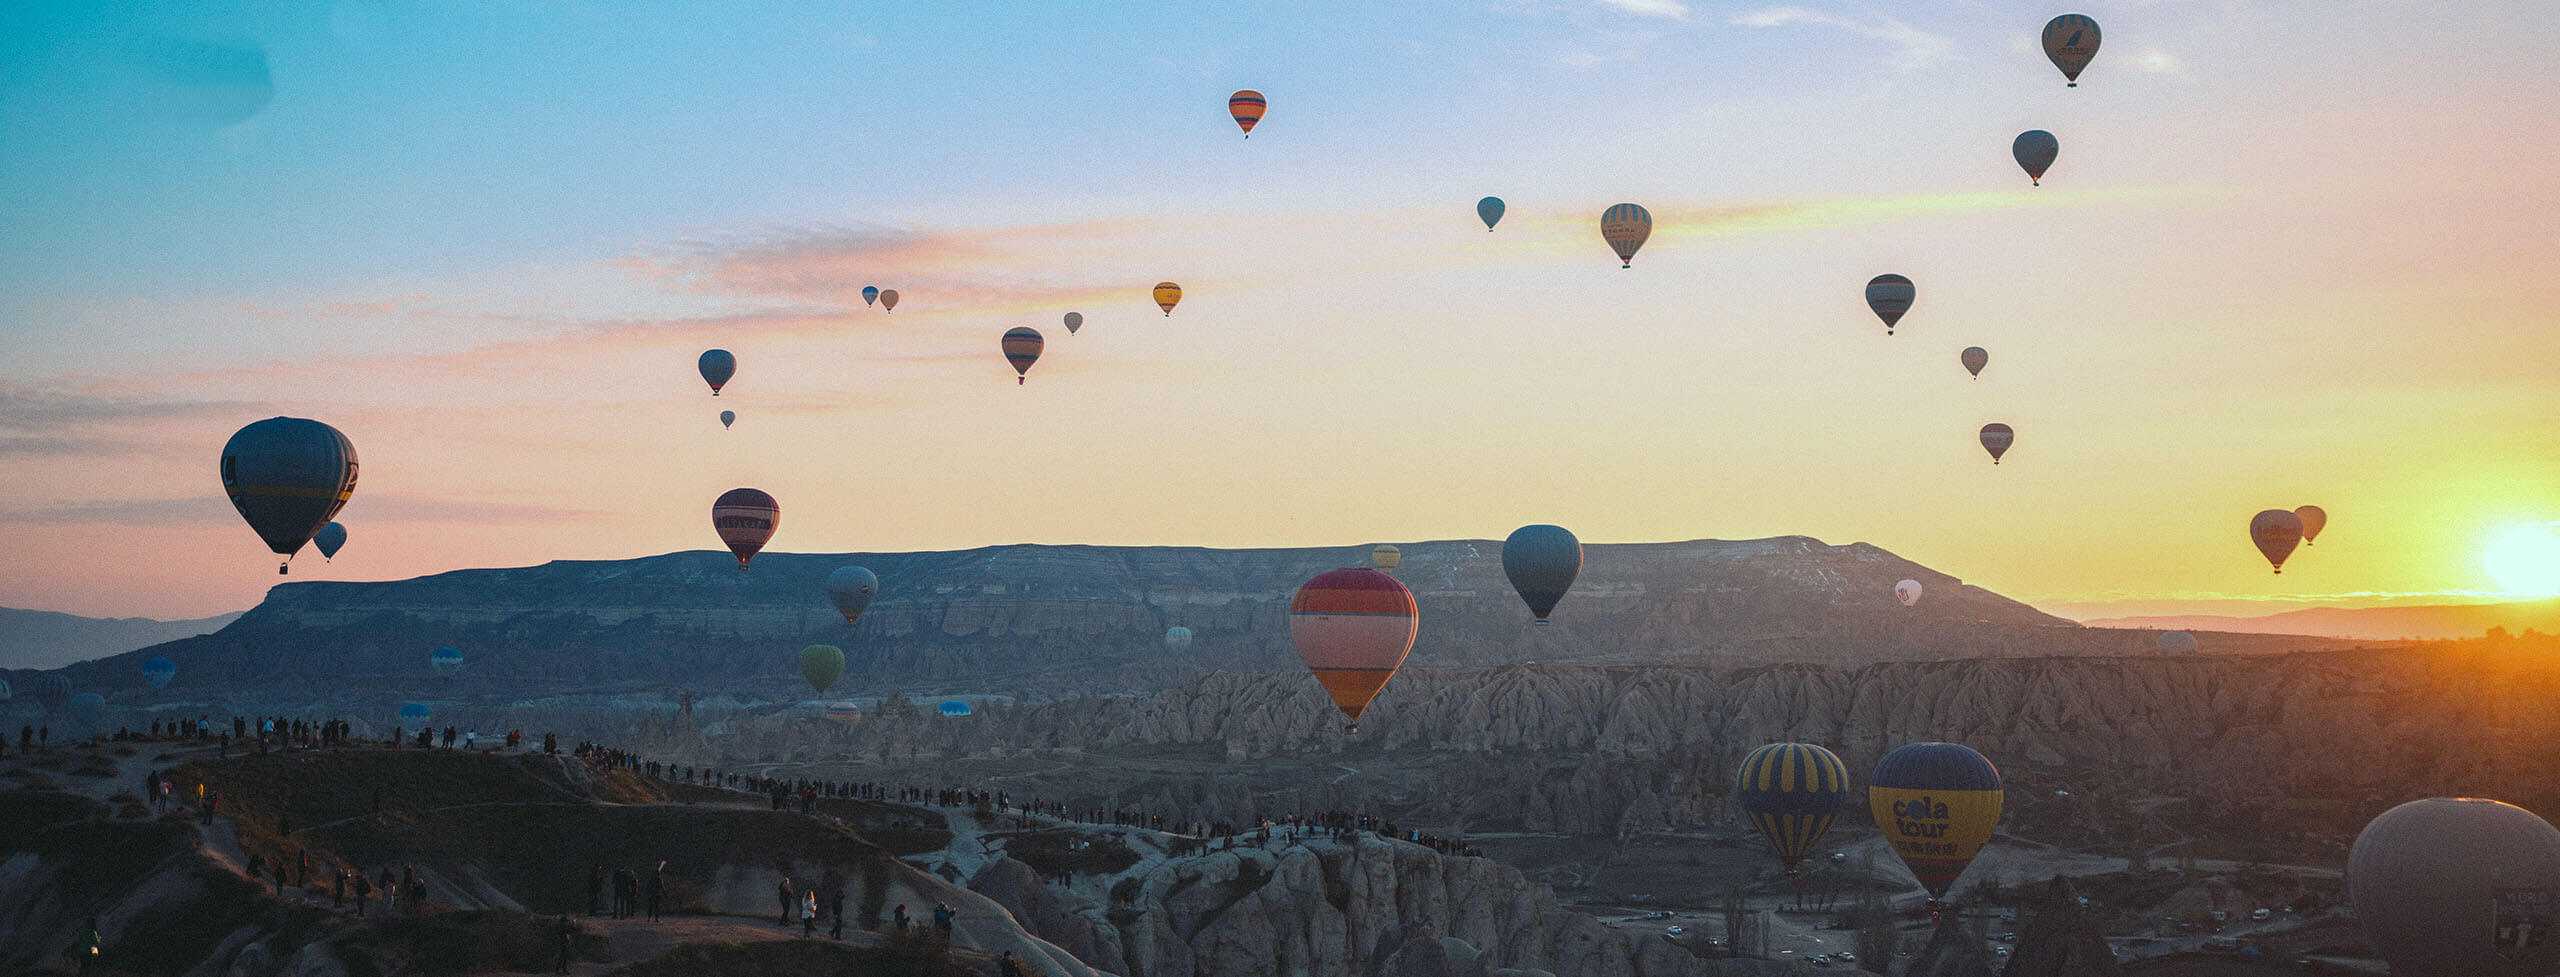 Фото воздушных шаров в горах